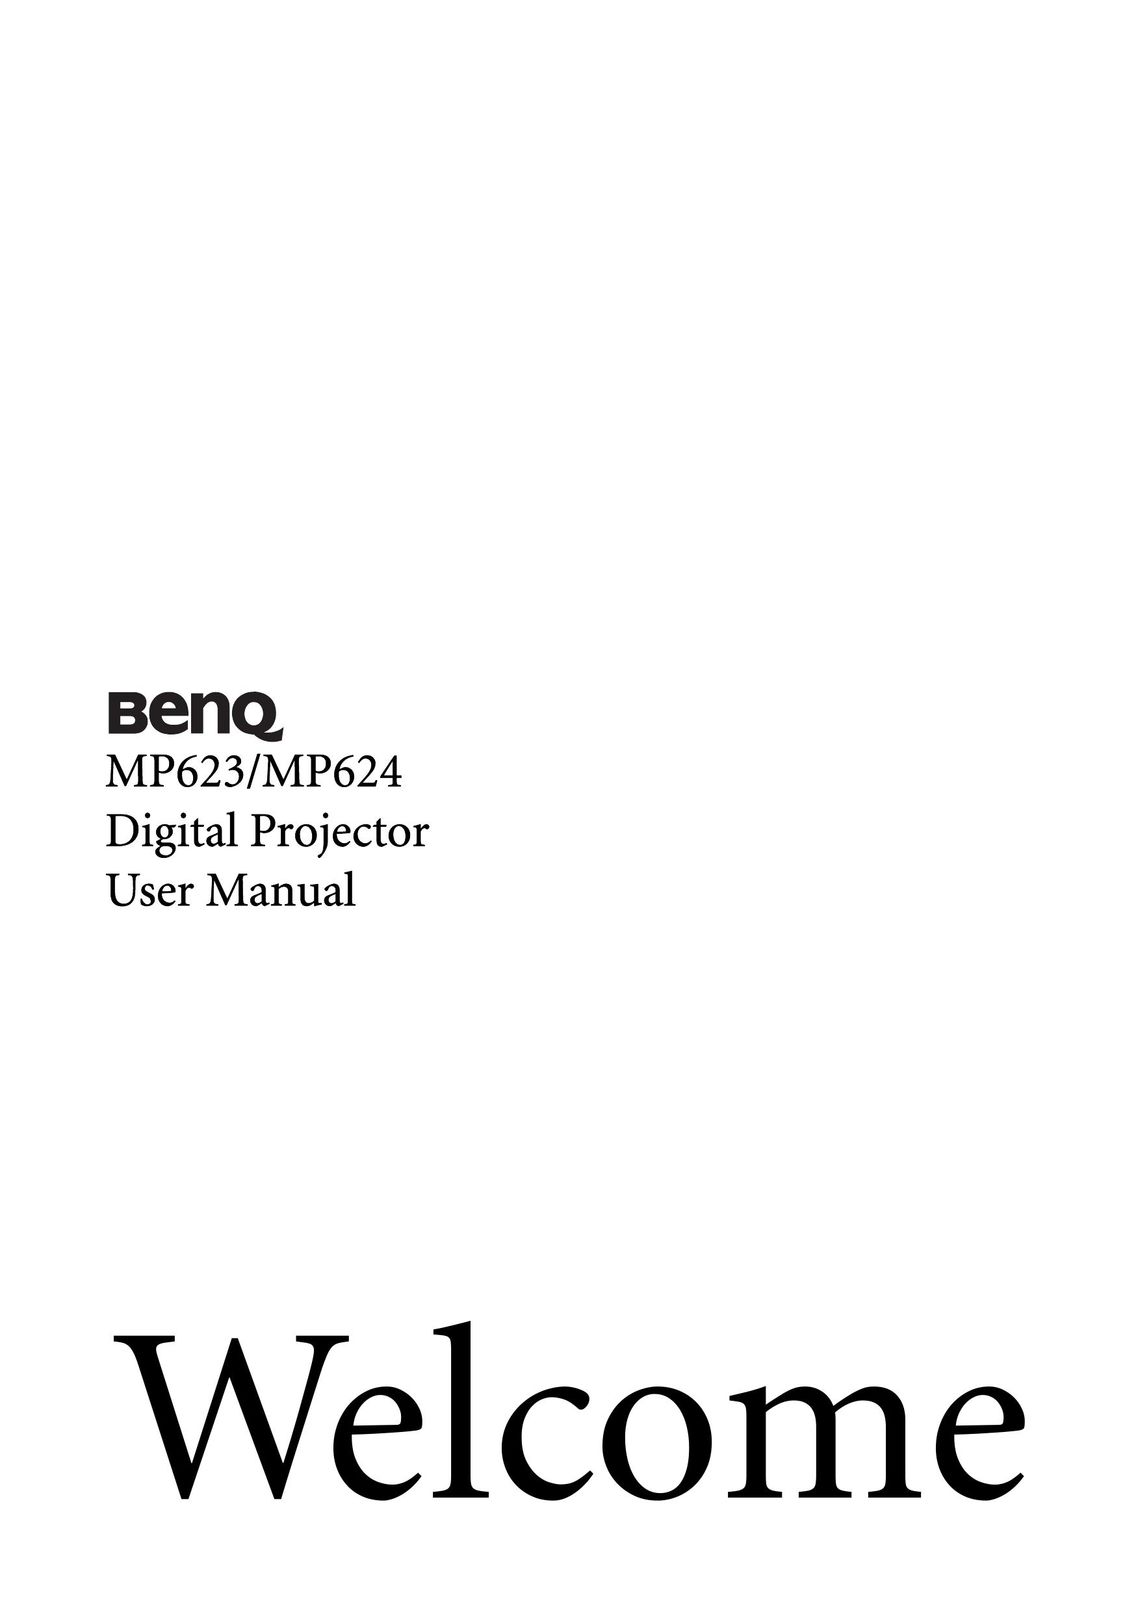 BenQ MP624 Projector User Manual